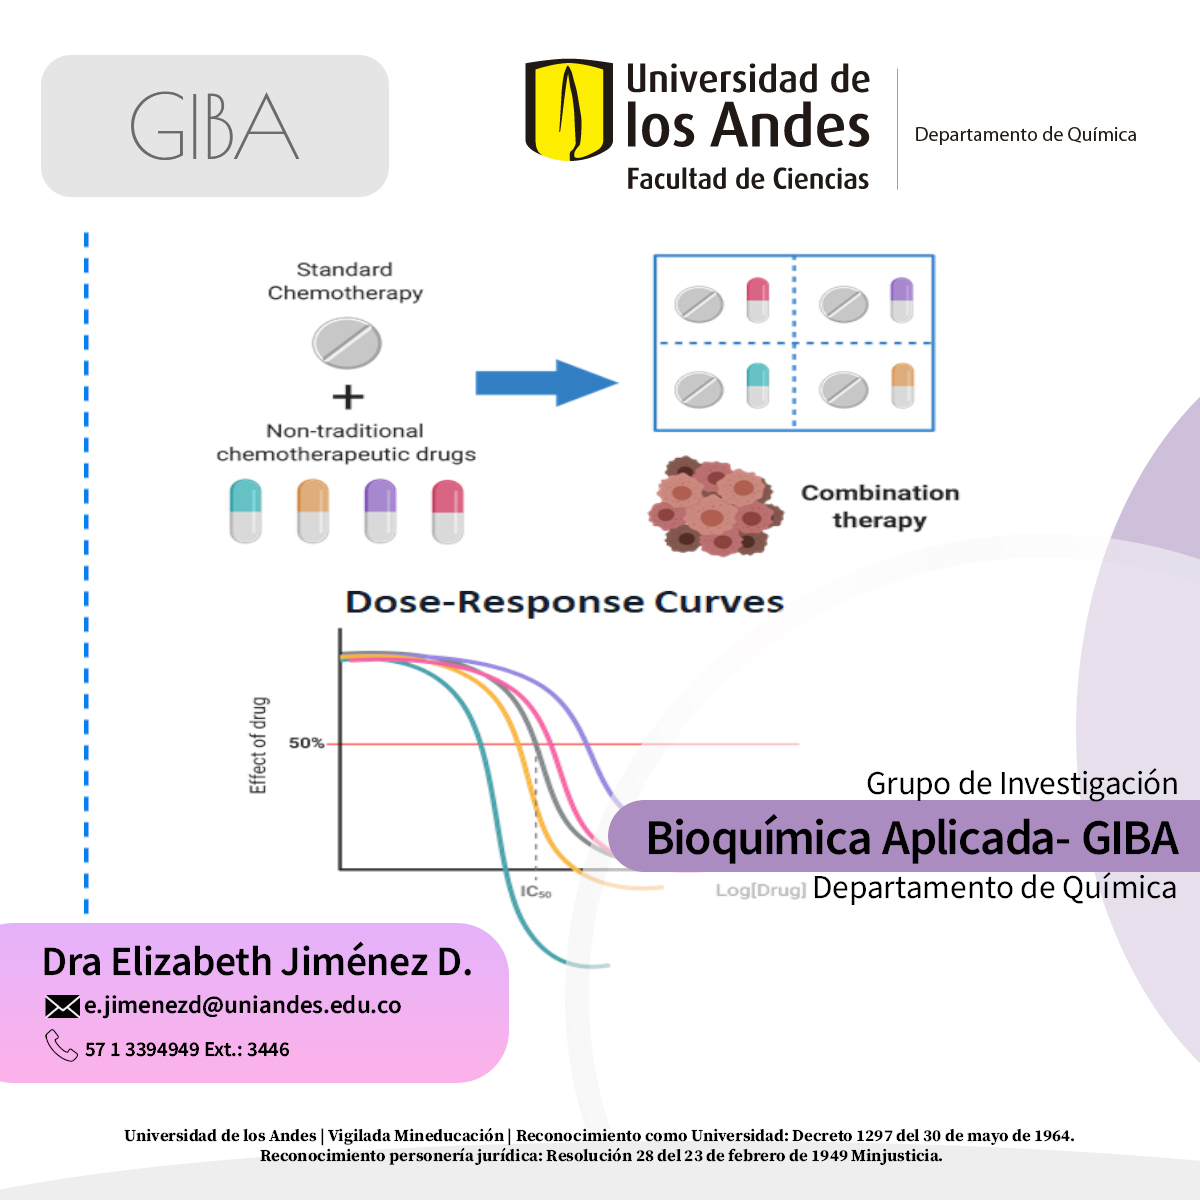 Bioquímica Aplicada-GIBA